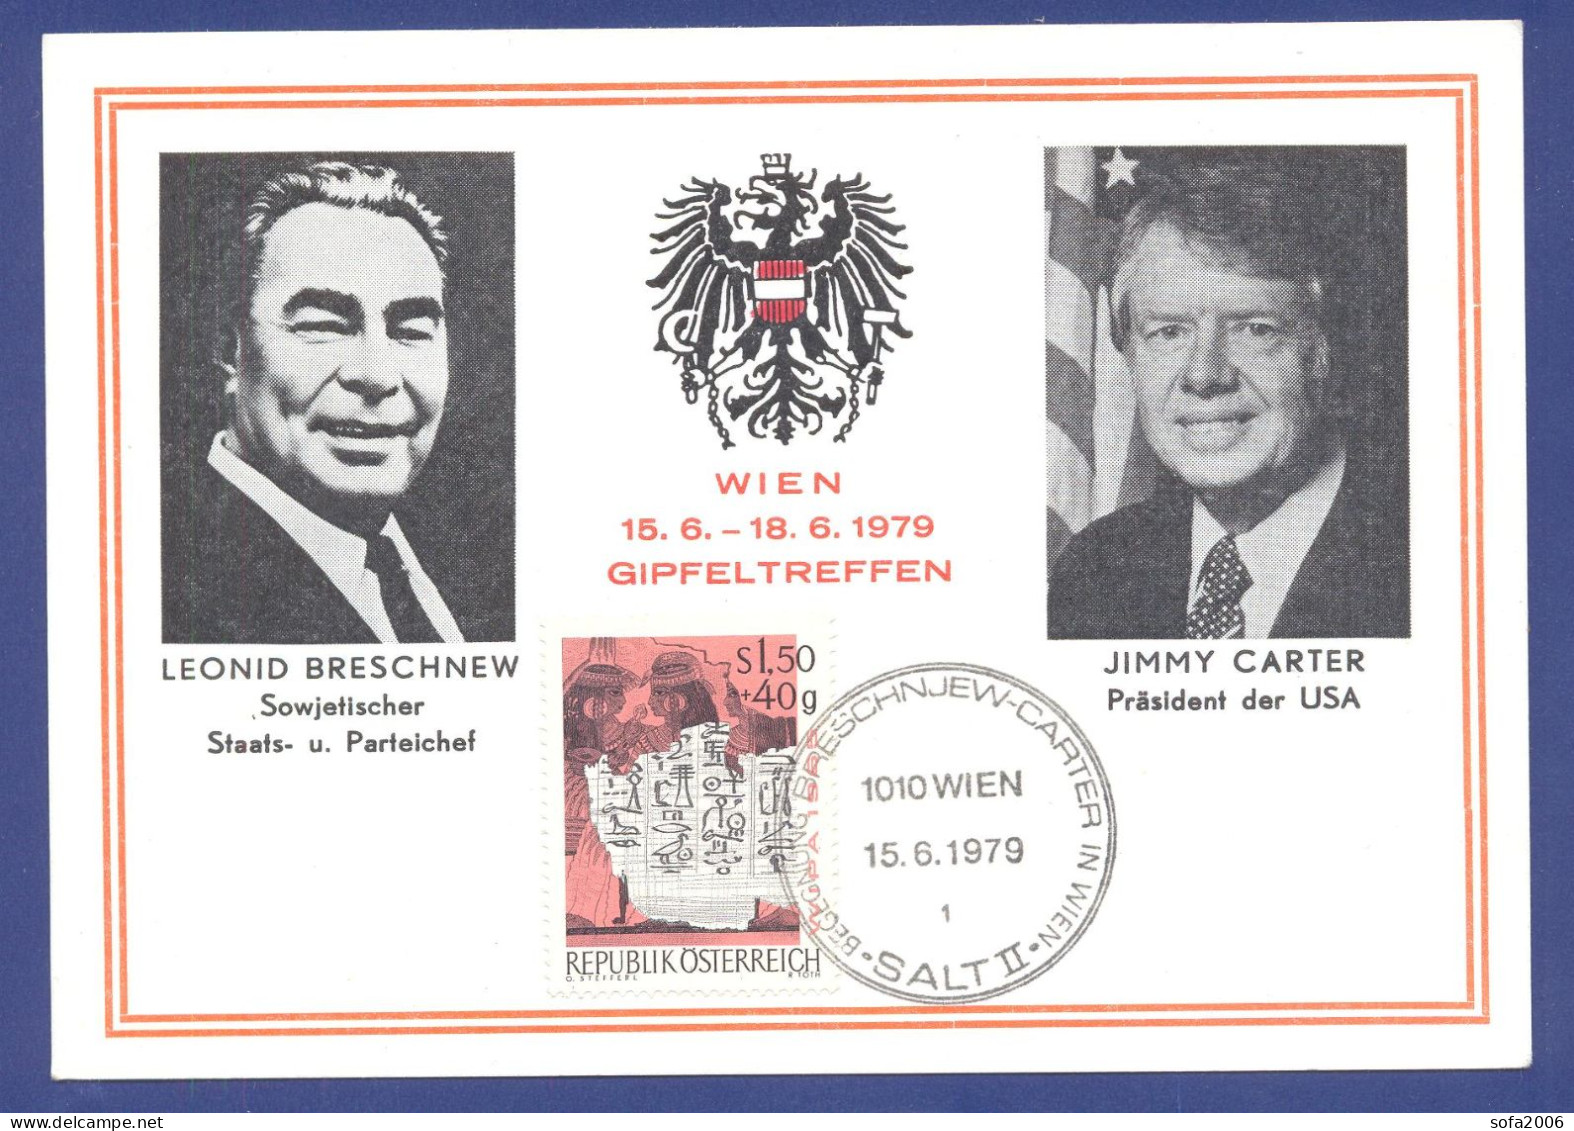 CARTE MAХIMUM .Leonid Breschnew, Jimmy Carter, Gipfeltreffen Wien, 15.6.1979, SALT II, Gedenkblatt. - Ereignisse